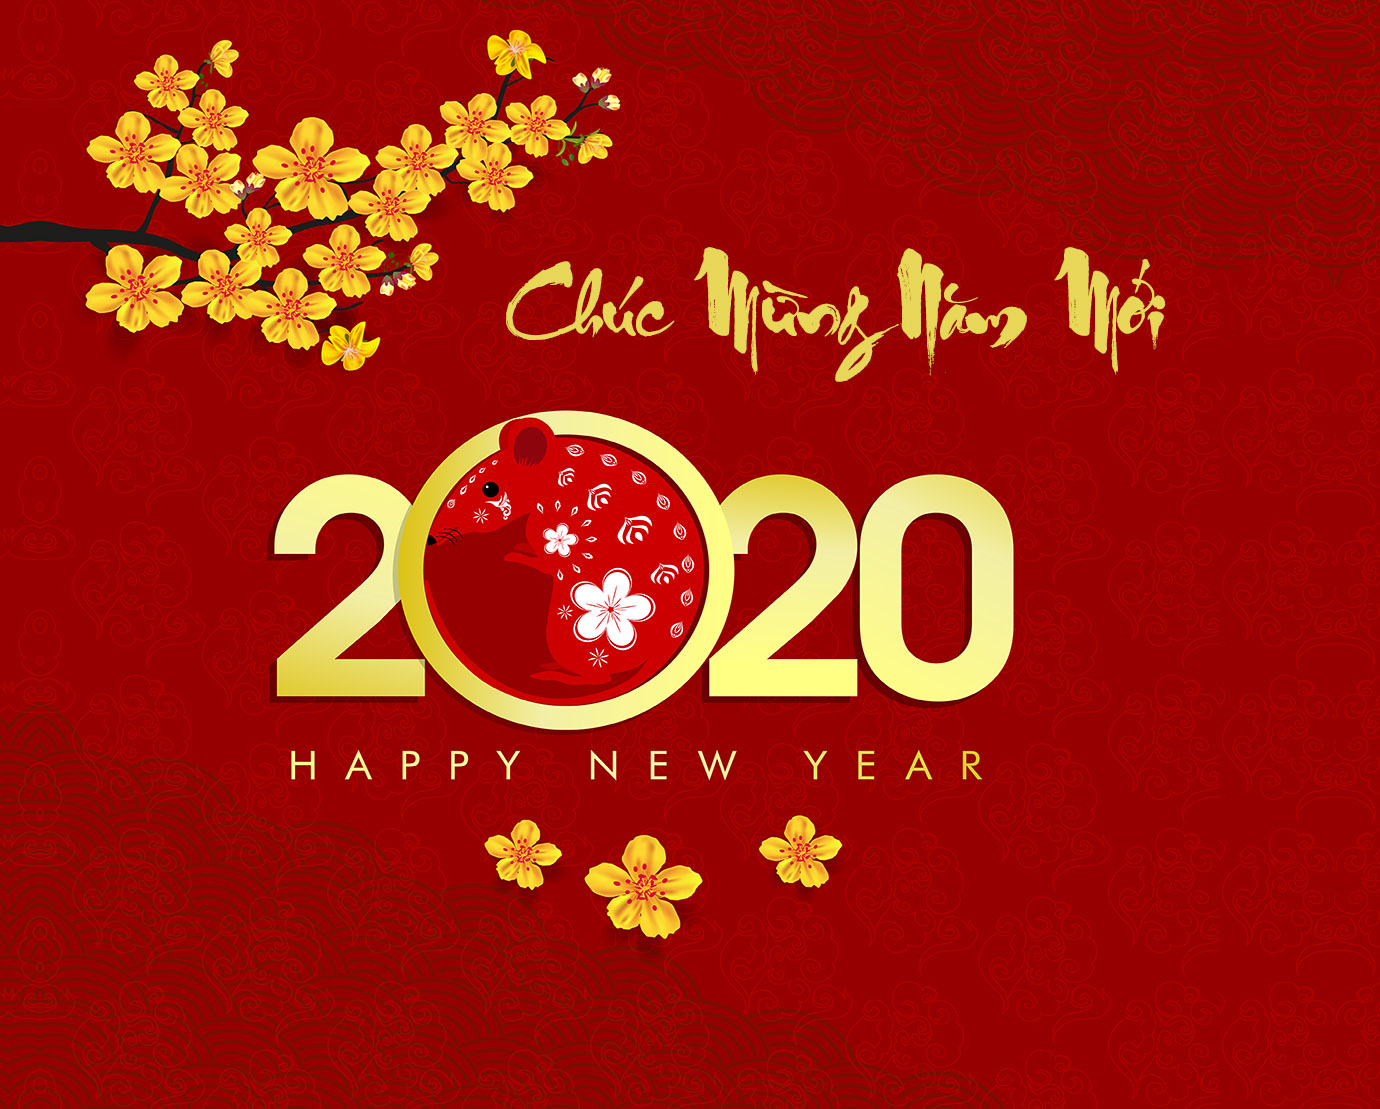 Hình nền 2020: Chúc mừng năm mới!